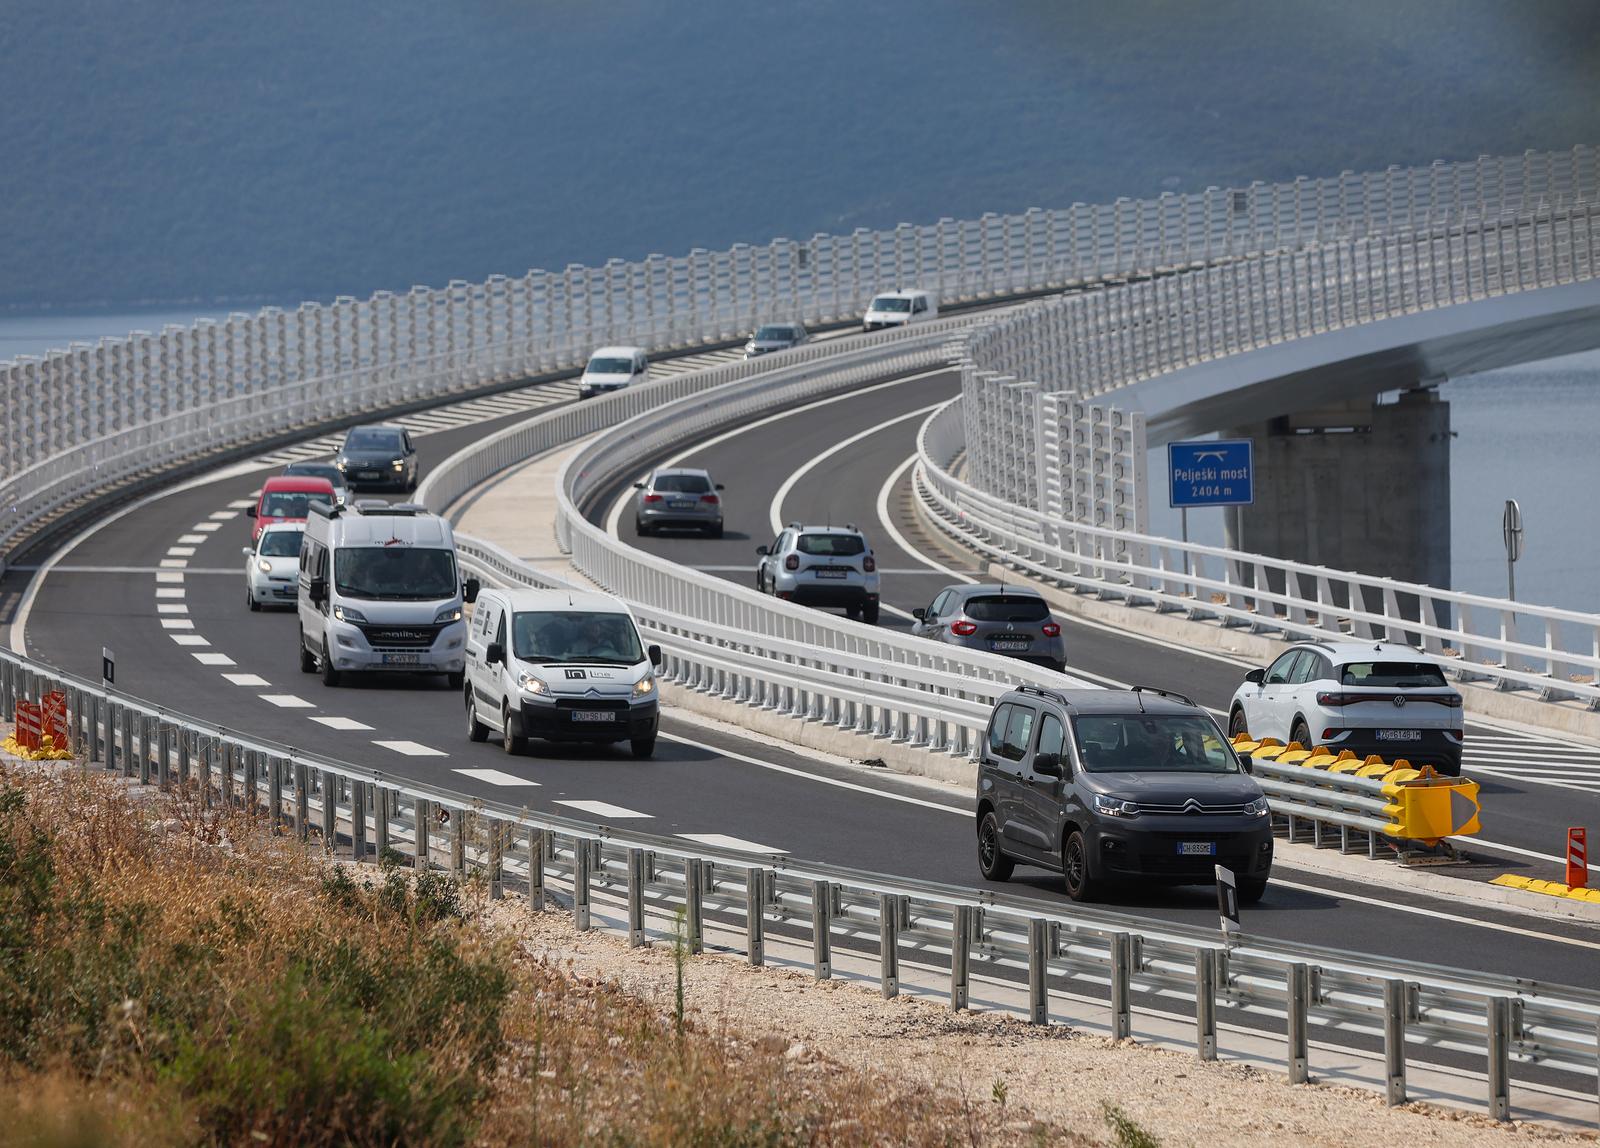 27.07.2022.,Komarna - Promet Peljeskim mostom od ponoci je otvoren u oba smjera, a preko njega je proslo vec oko 1500 vozila  Photo: Igor Kralj/PIXSELL